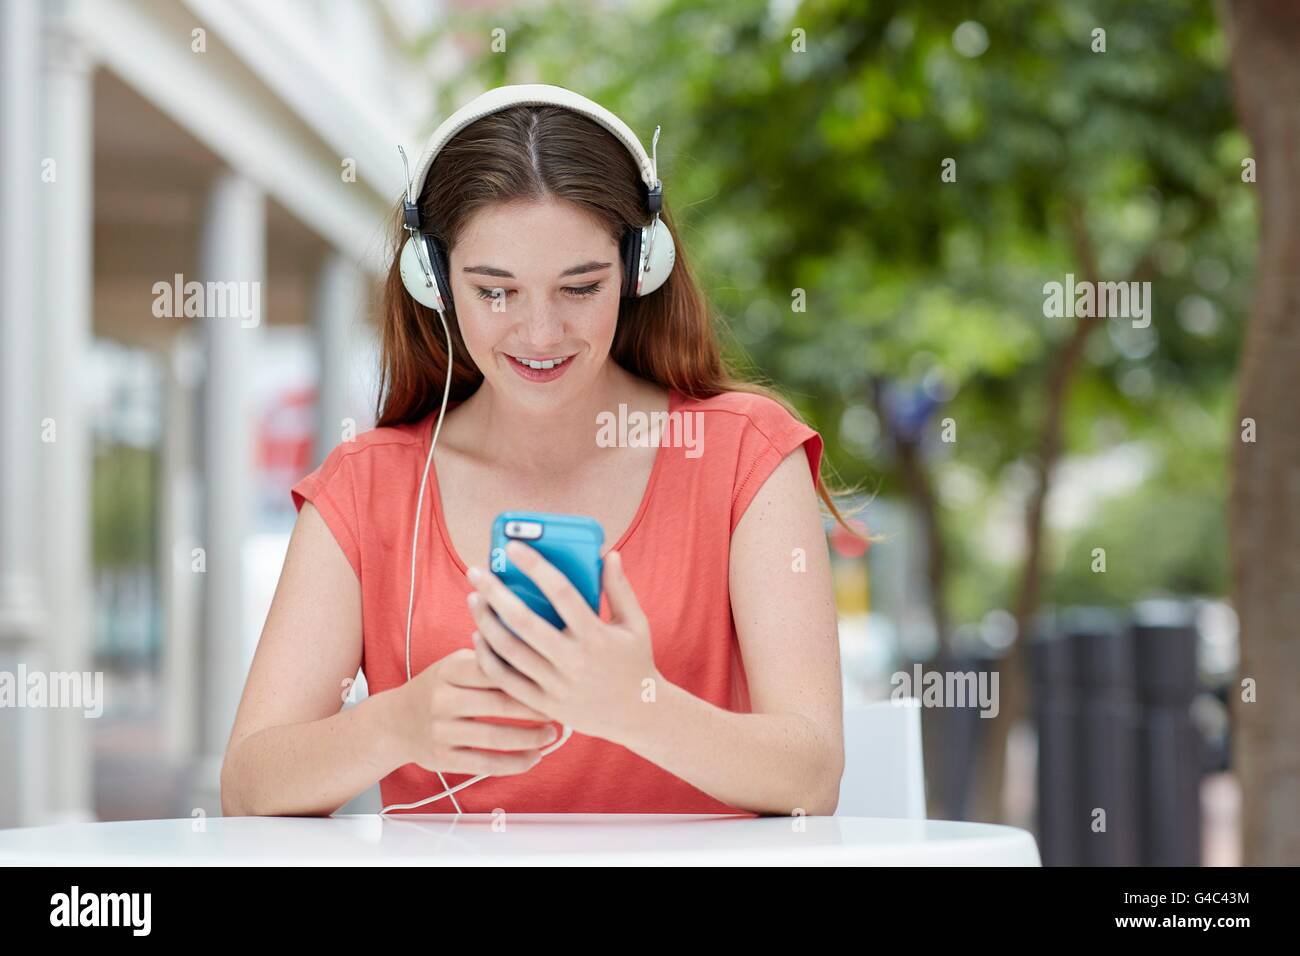 Modelo liberado. Mujer joven que lleva puestos los auriculares para escuchar música en el smartphone. Foto de stock